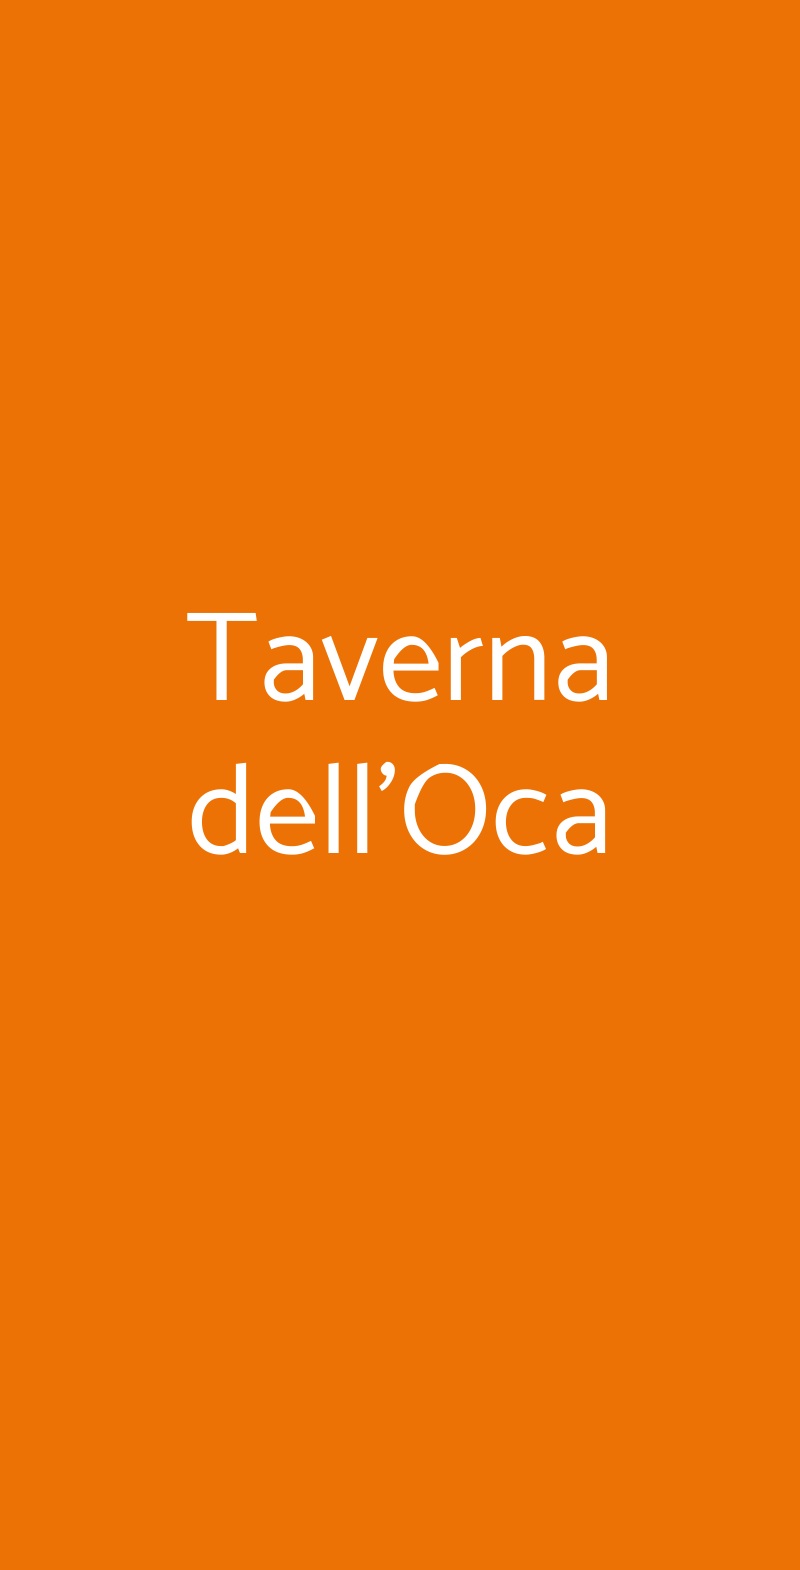 Taverna dell'Oca Torino menù 1 pagina